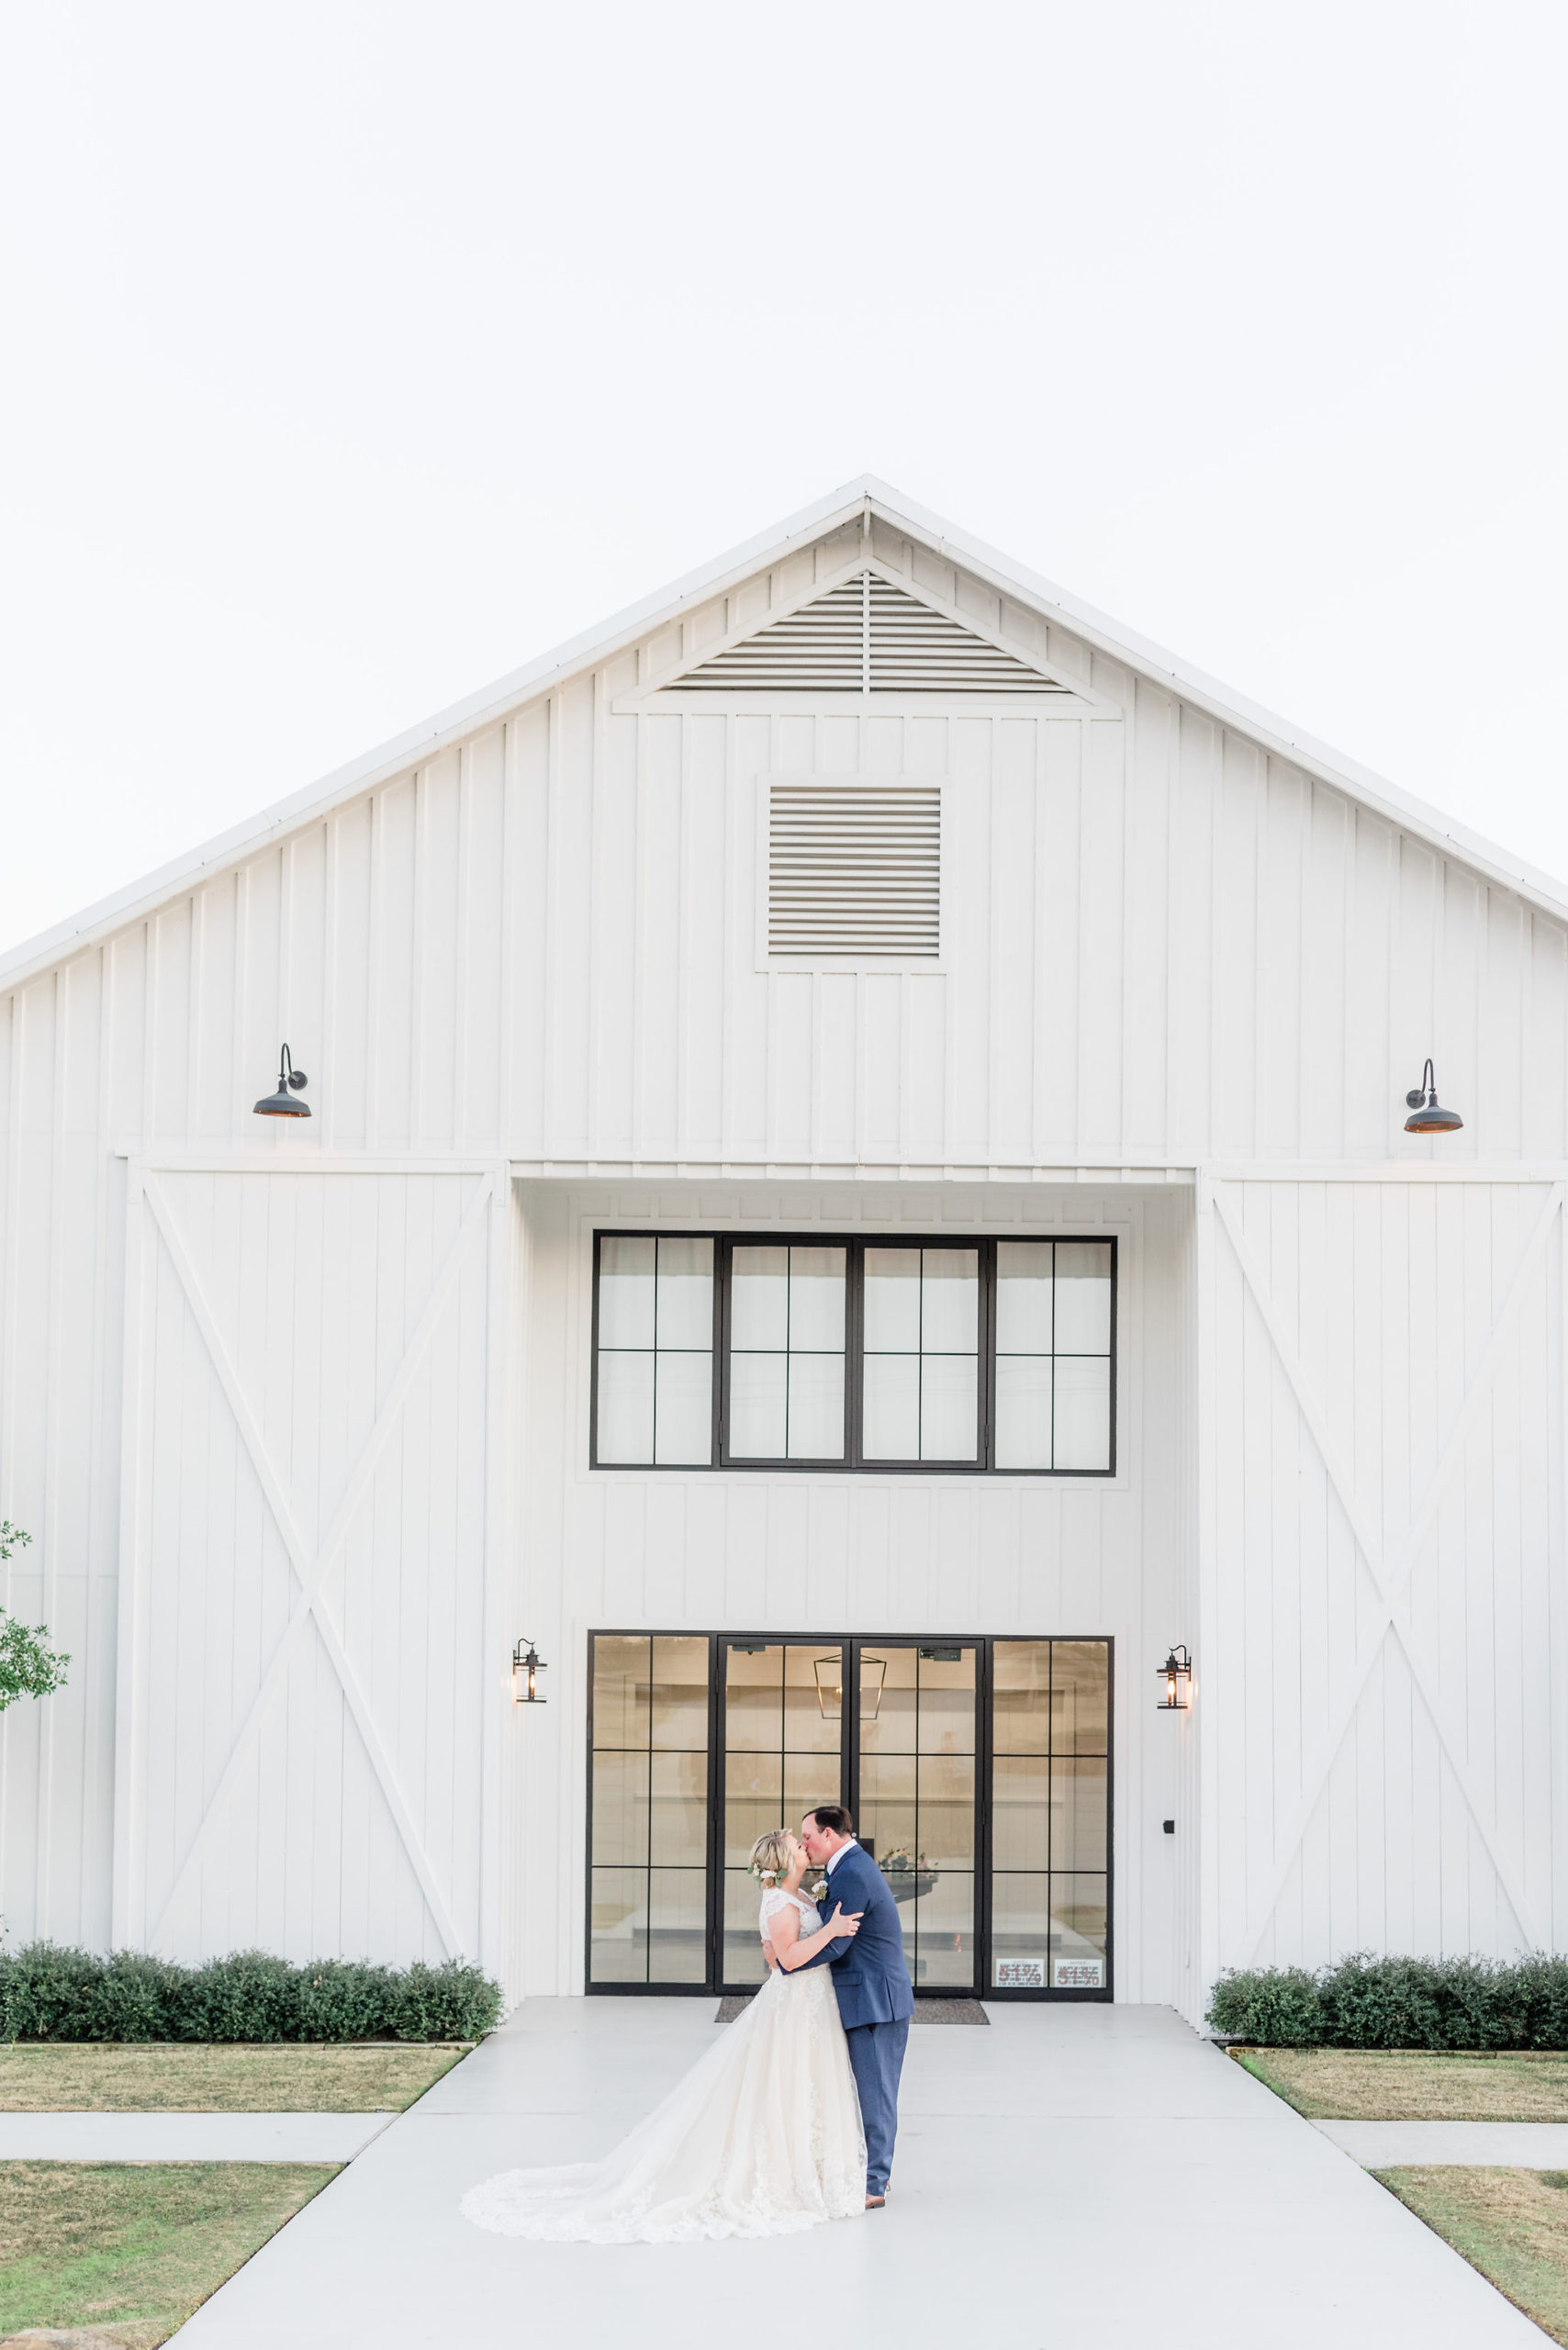 The Farmhouse wedding by Eric & Jenn Photography